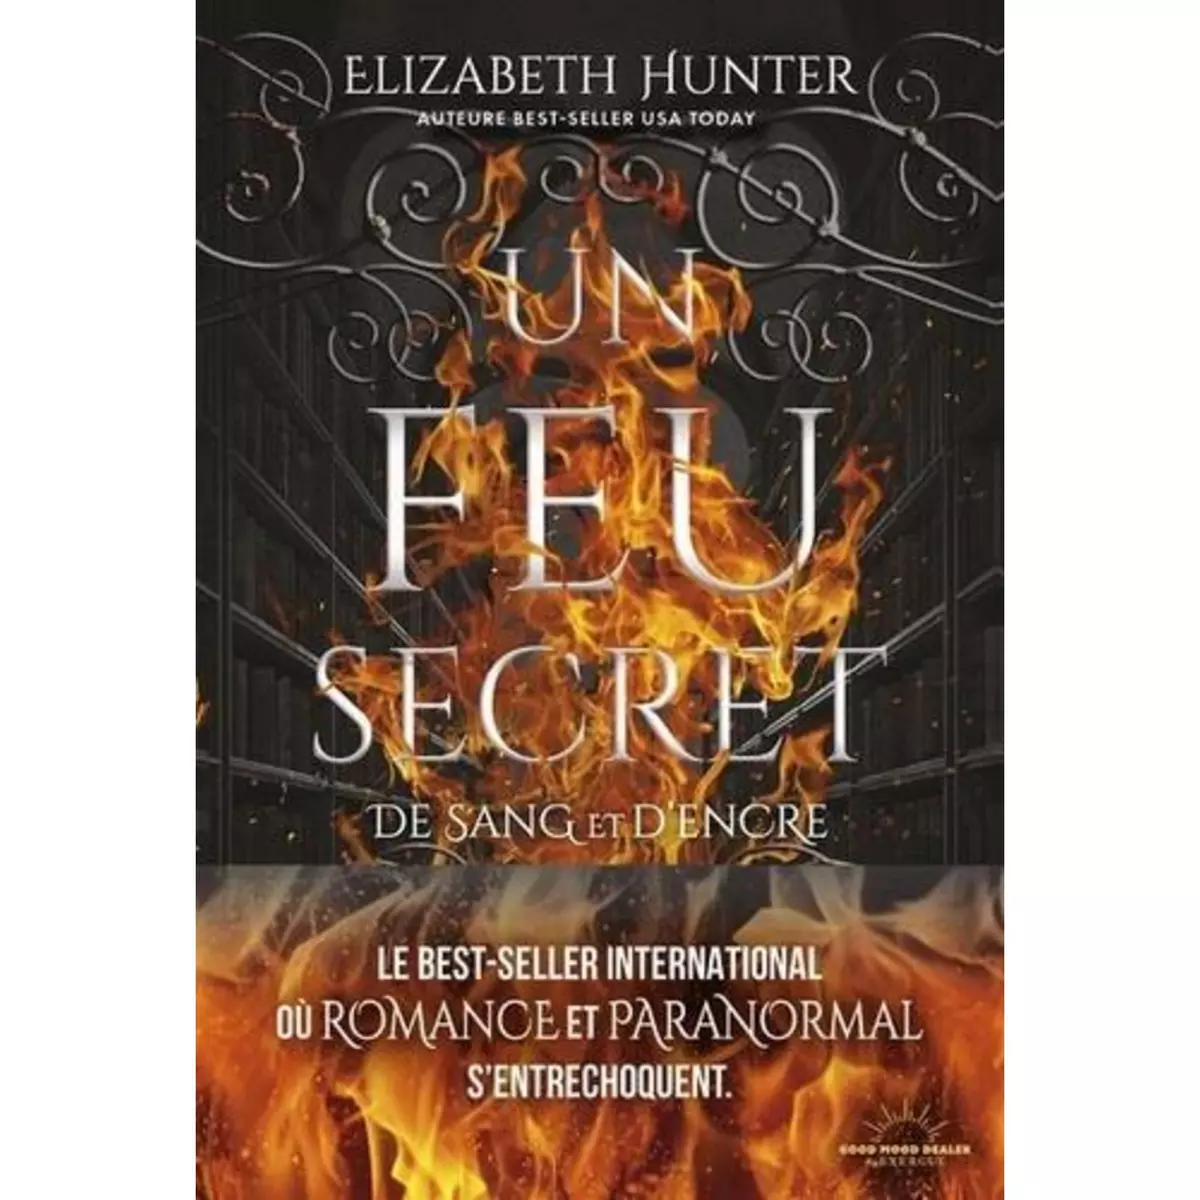  DE SANG ET D'ENCRE TOME 1 : UN FEU SECRET, Hunter Elizabeth